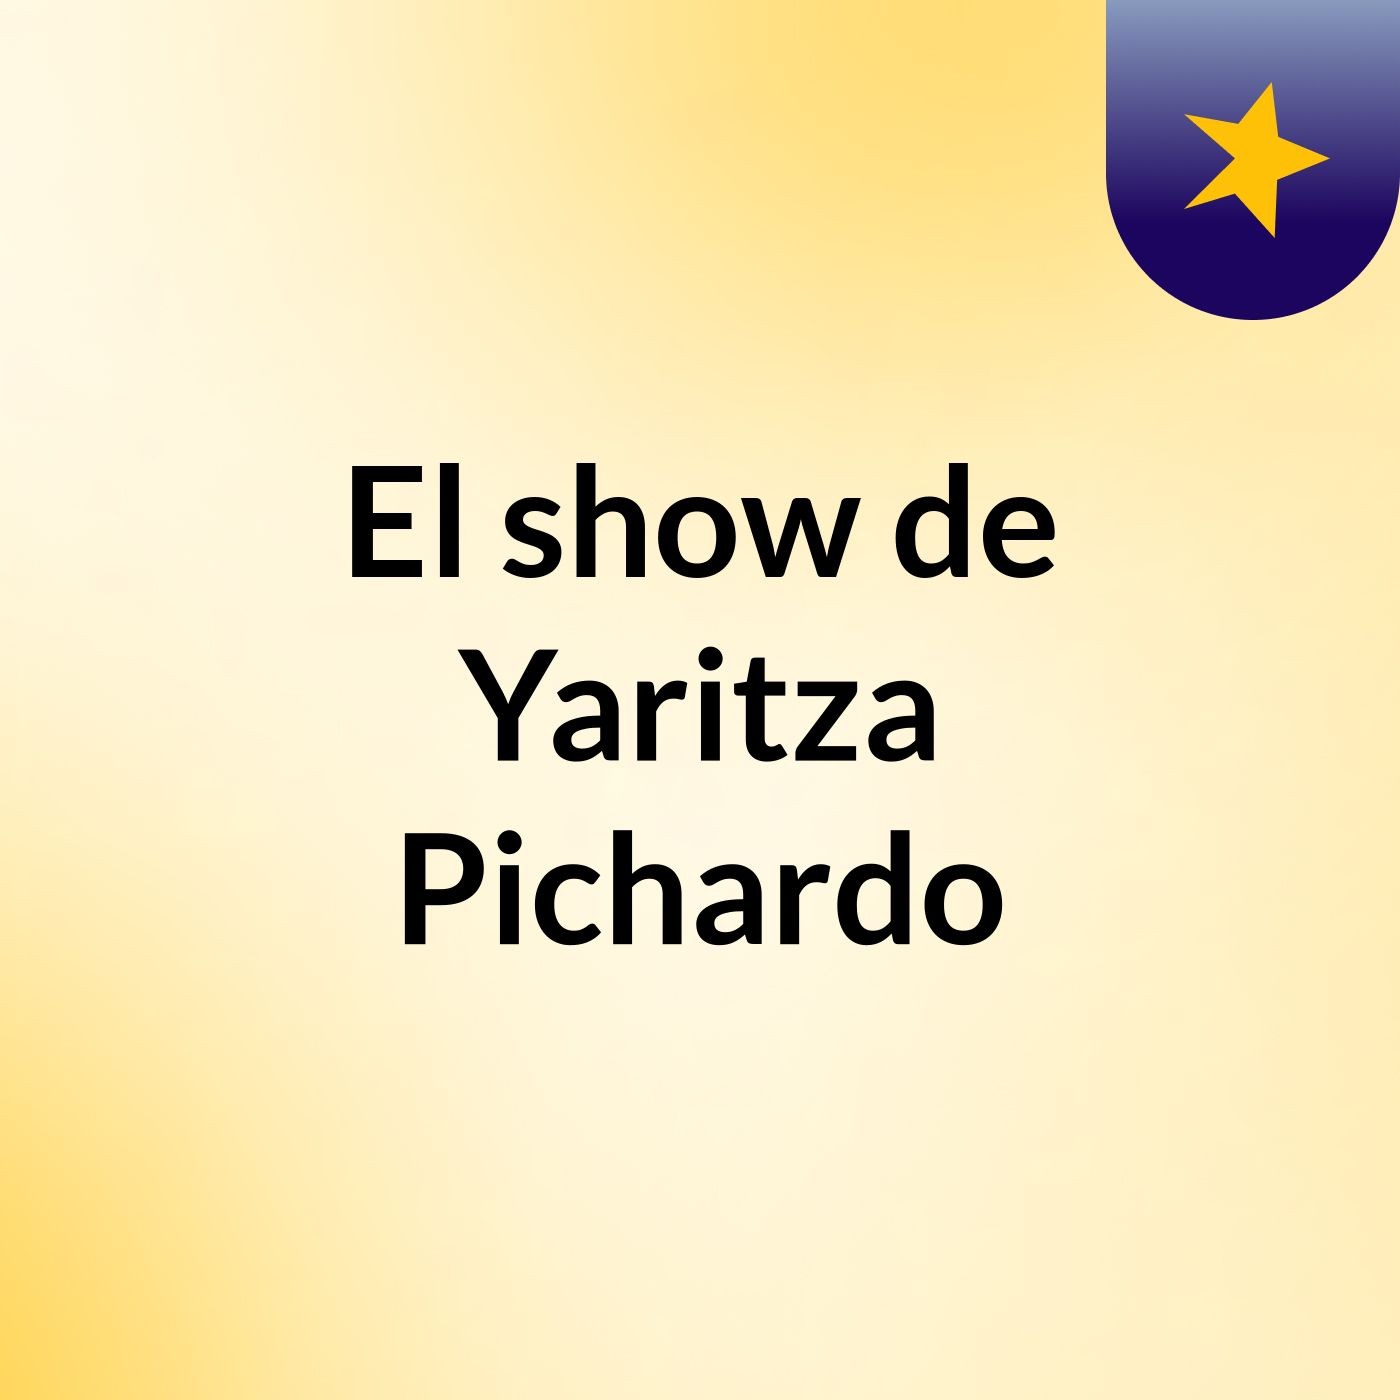 El show de Yaritza Pichardo